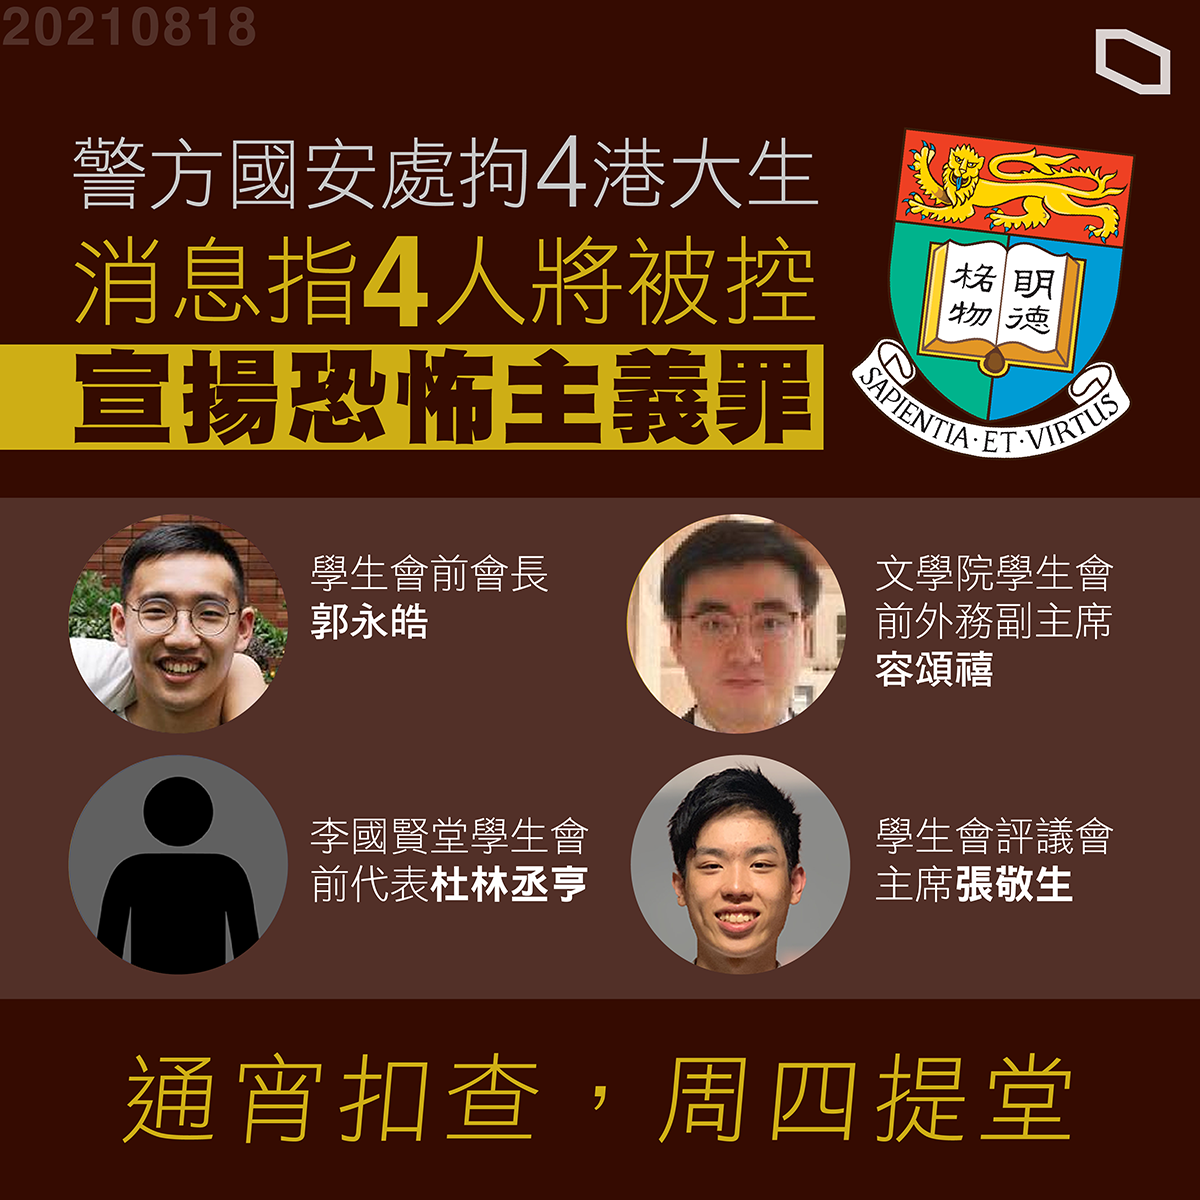 Des groupes taiwanais condamnent l’arrestation de quatre étudiants à Hong Kong